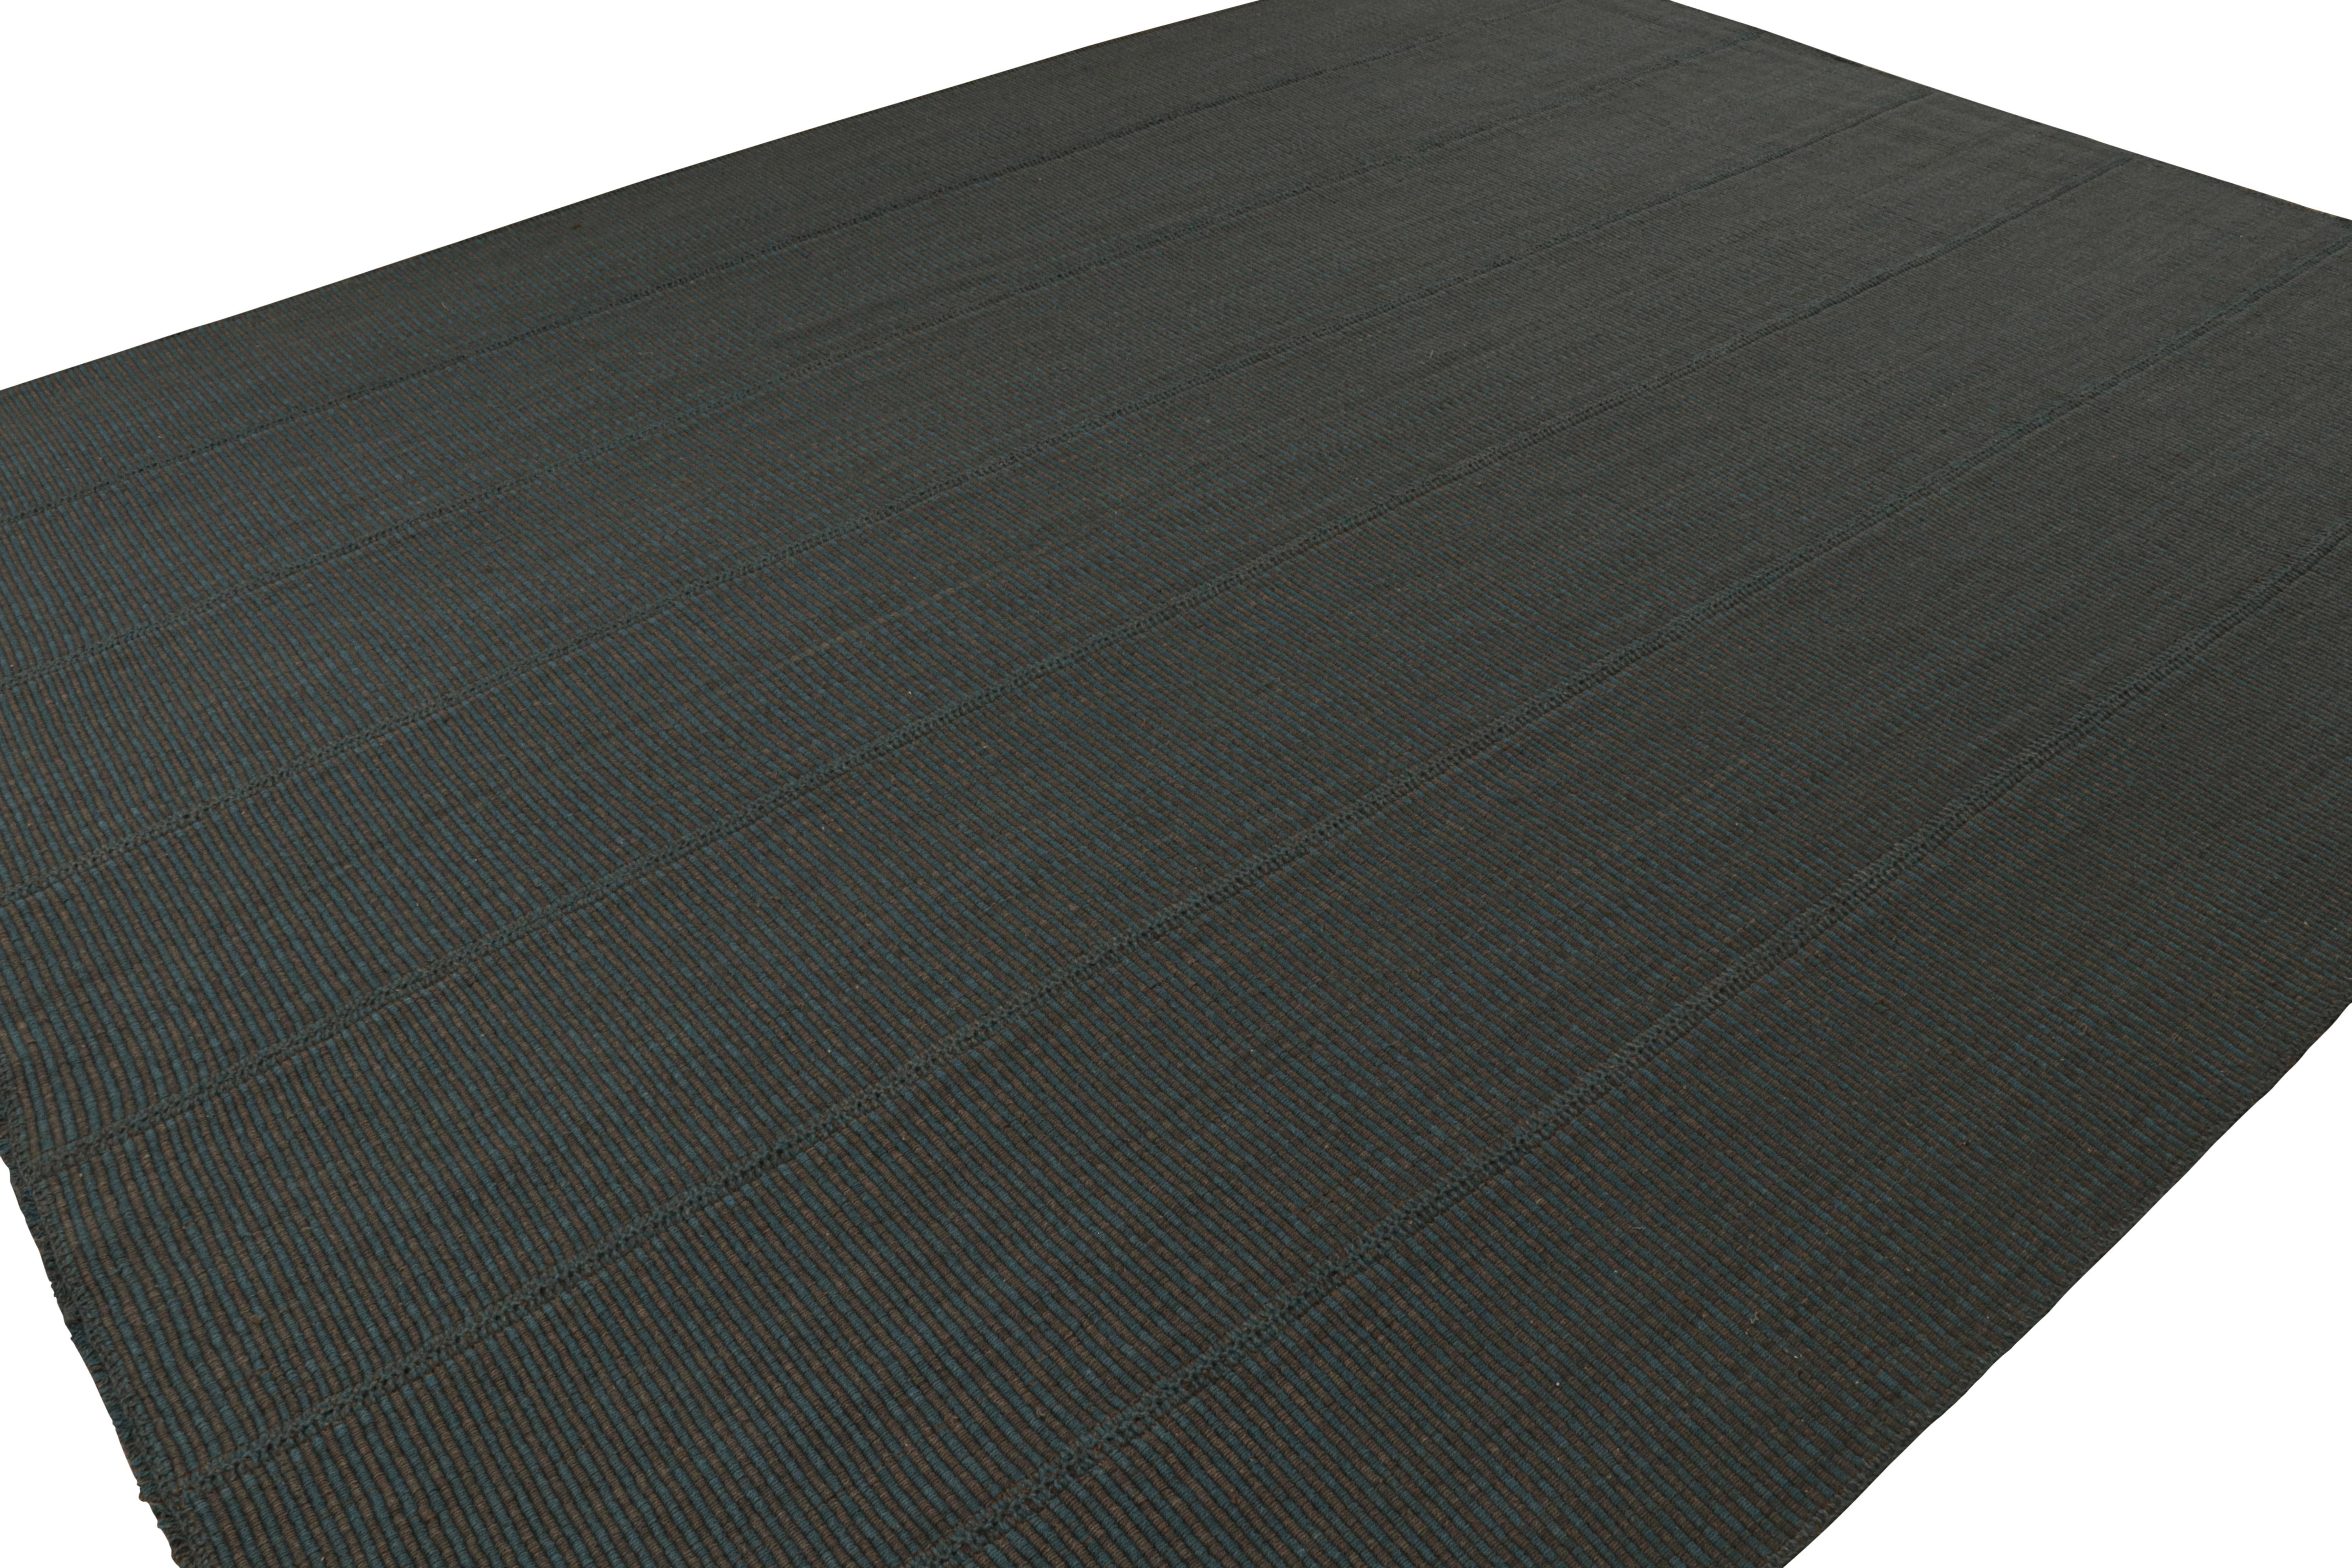 Tissé à la main en laine, un kilim 11x14 aux accents noirs et bleus, issu d'une nouvelle ligne audacieuse de tissages plats contemporains, 'Rez Kilim', par Rug & Kilim.

Sur le design : 

Notre dernier 